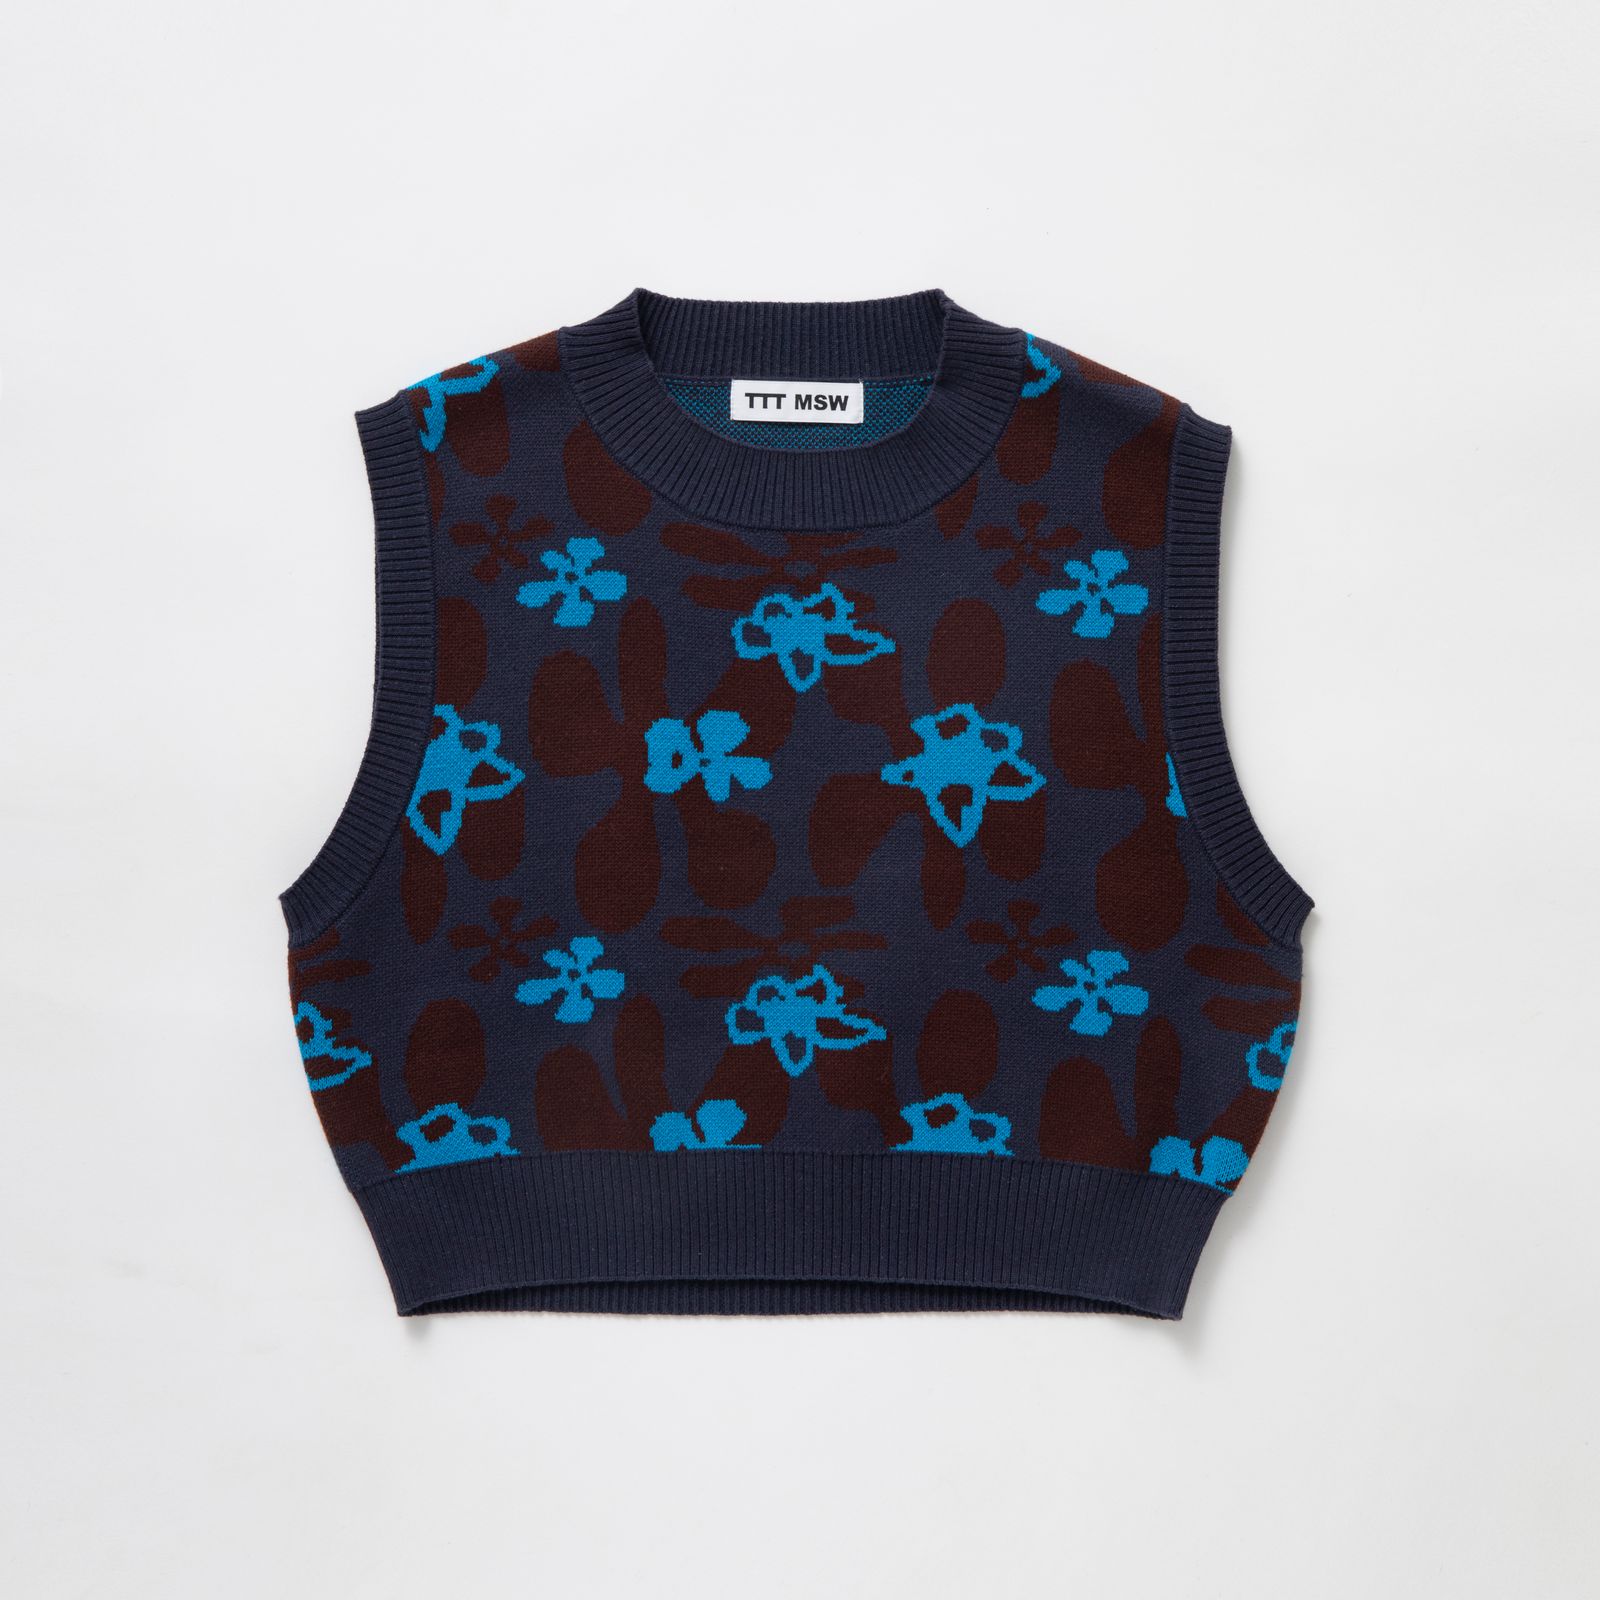 TTT MSW - 【残りわずか】Flower Camo Knit Vest | ACRMTSM ONLINE STORE